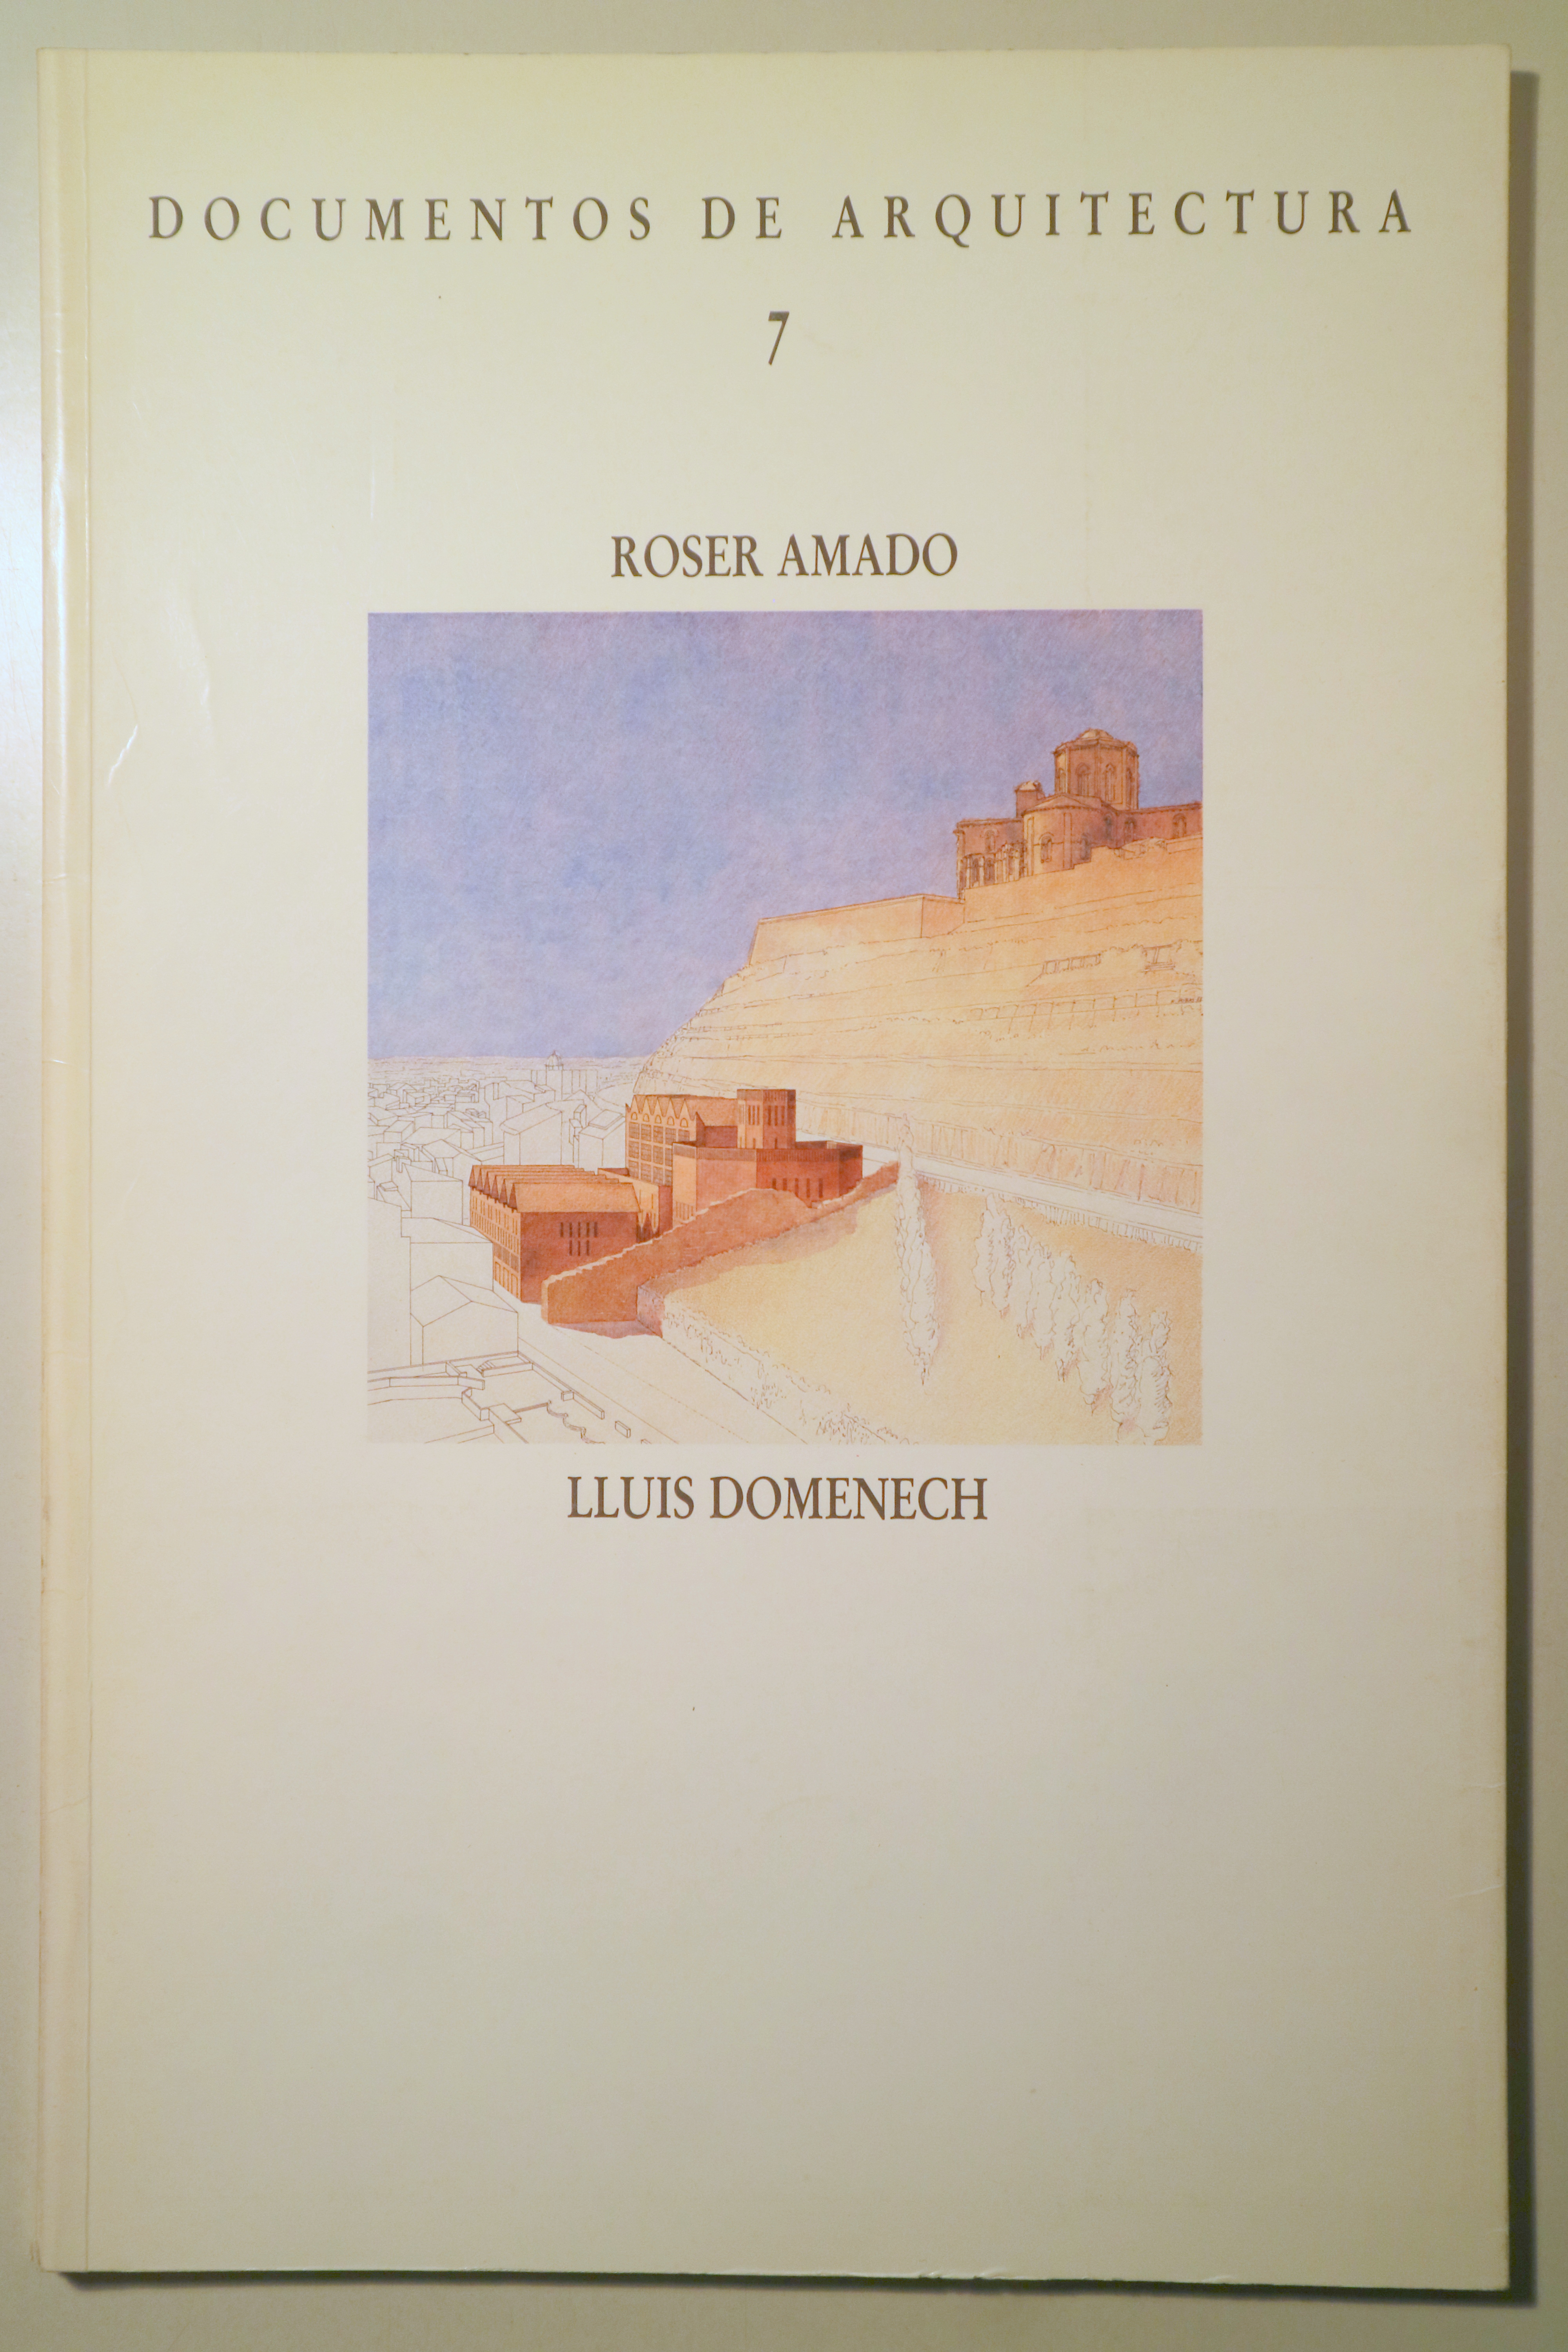 DOCUMENTOS DE ARQUITECTURA 7. Roser Amado, Lluis Domenech - Madrid 1988 - Ilustrado